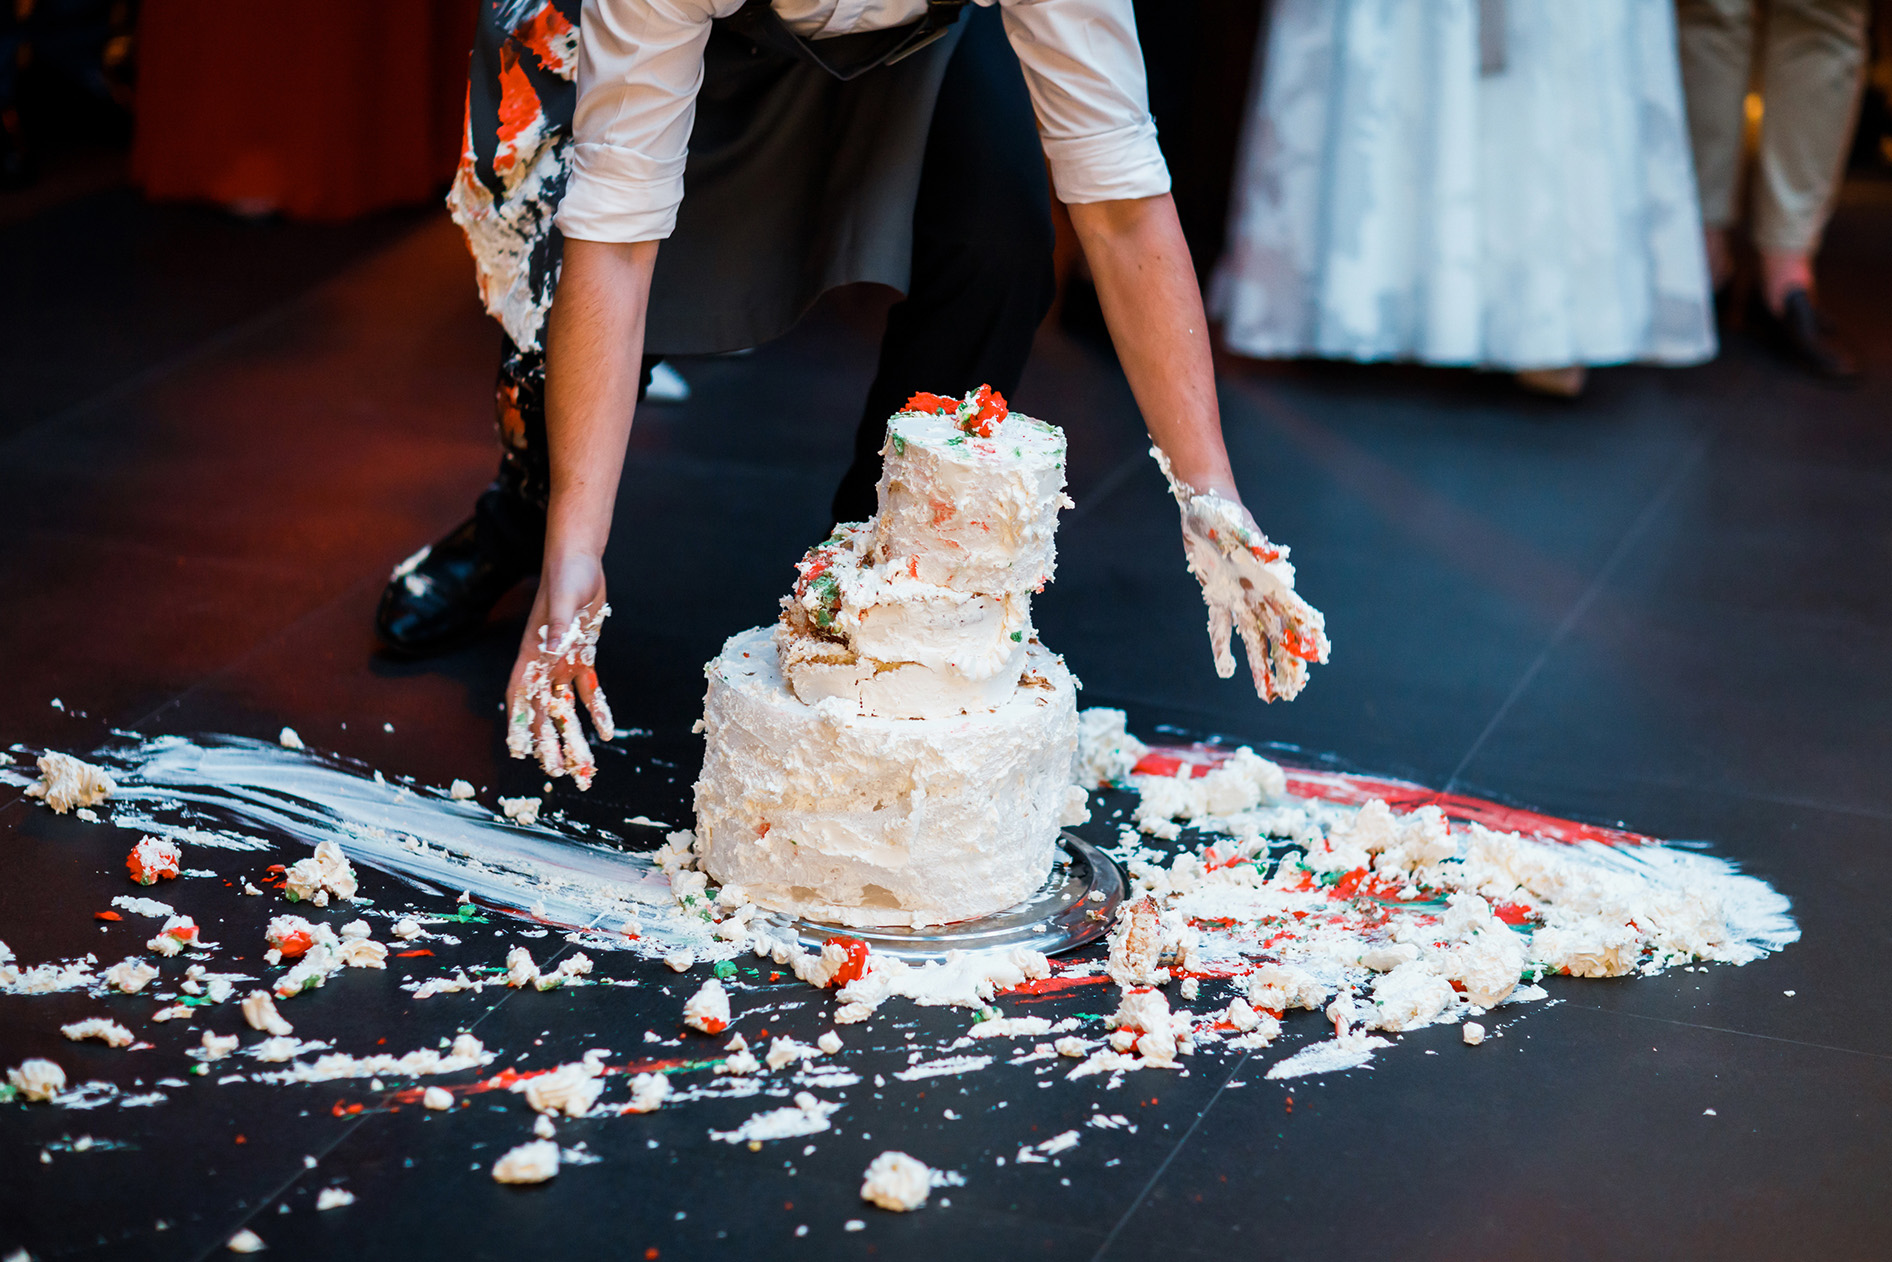 Dropped wedding cake